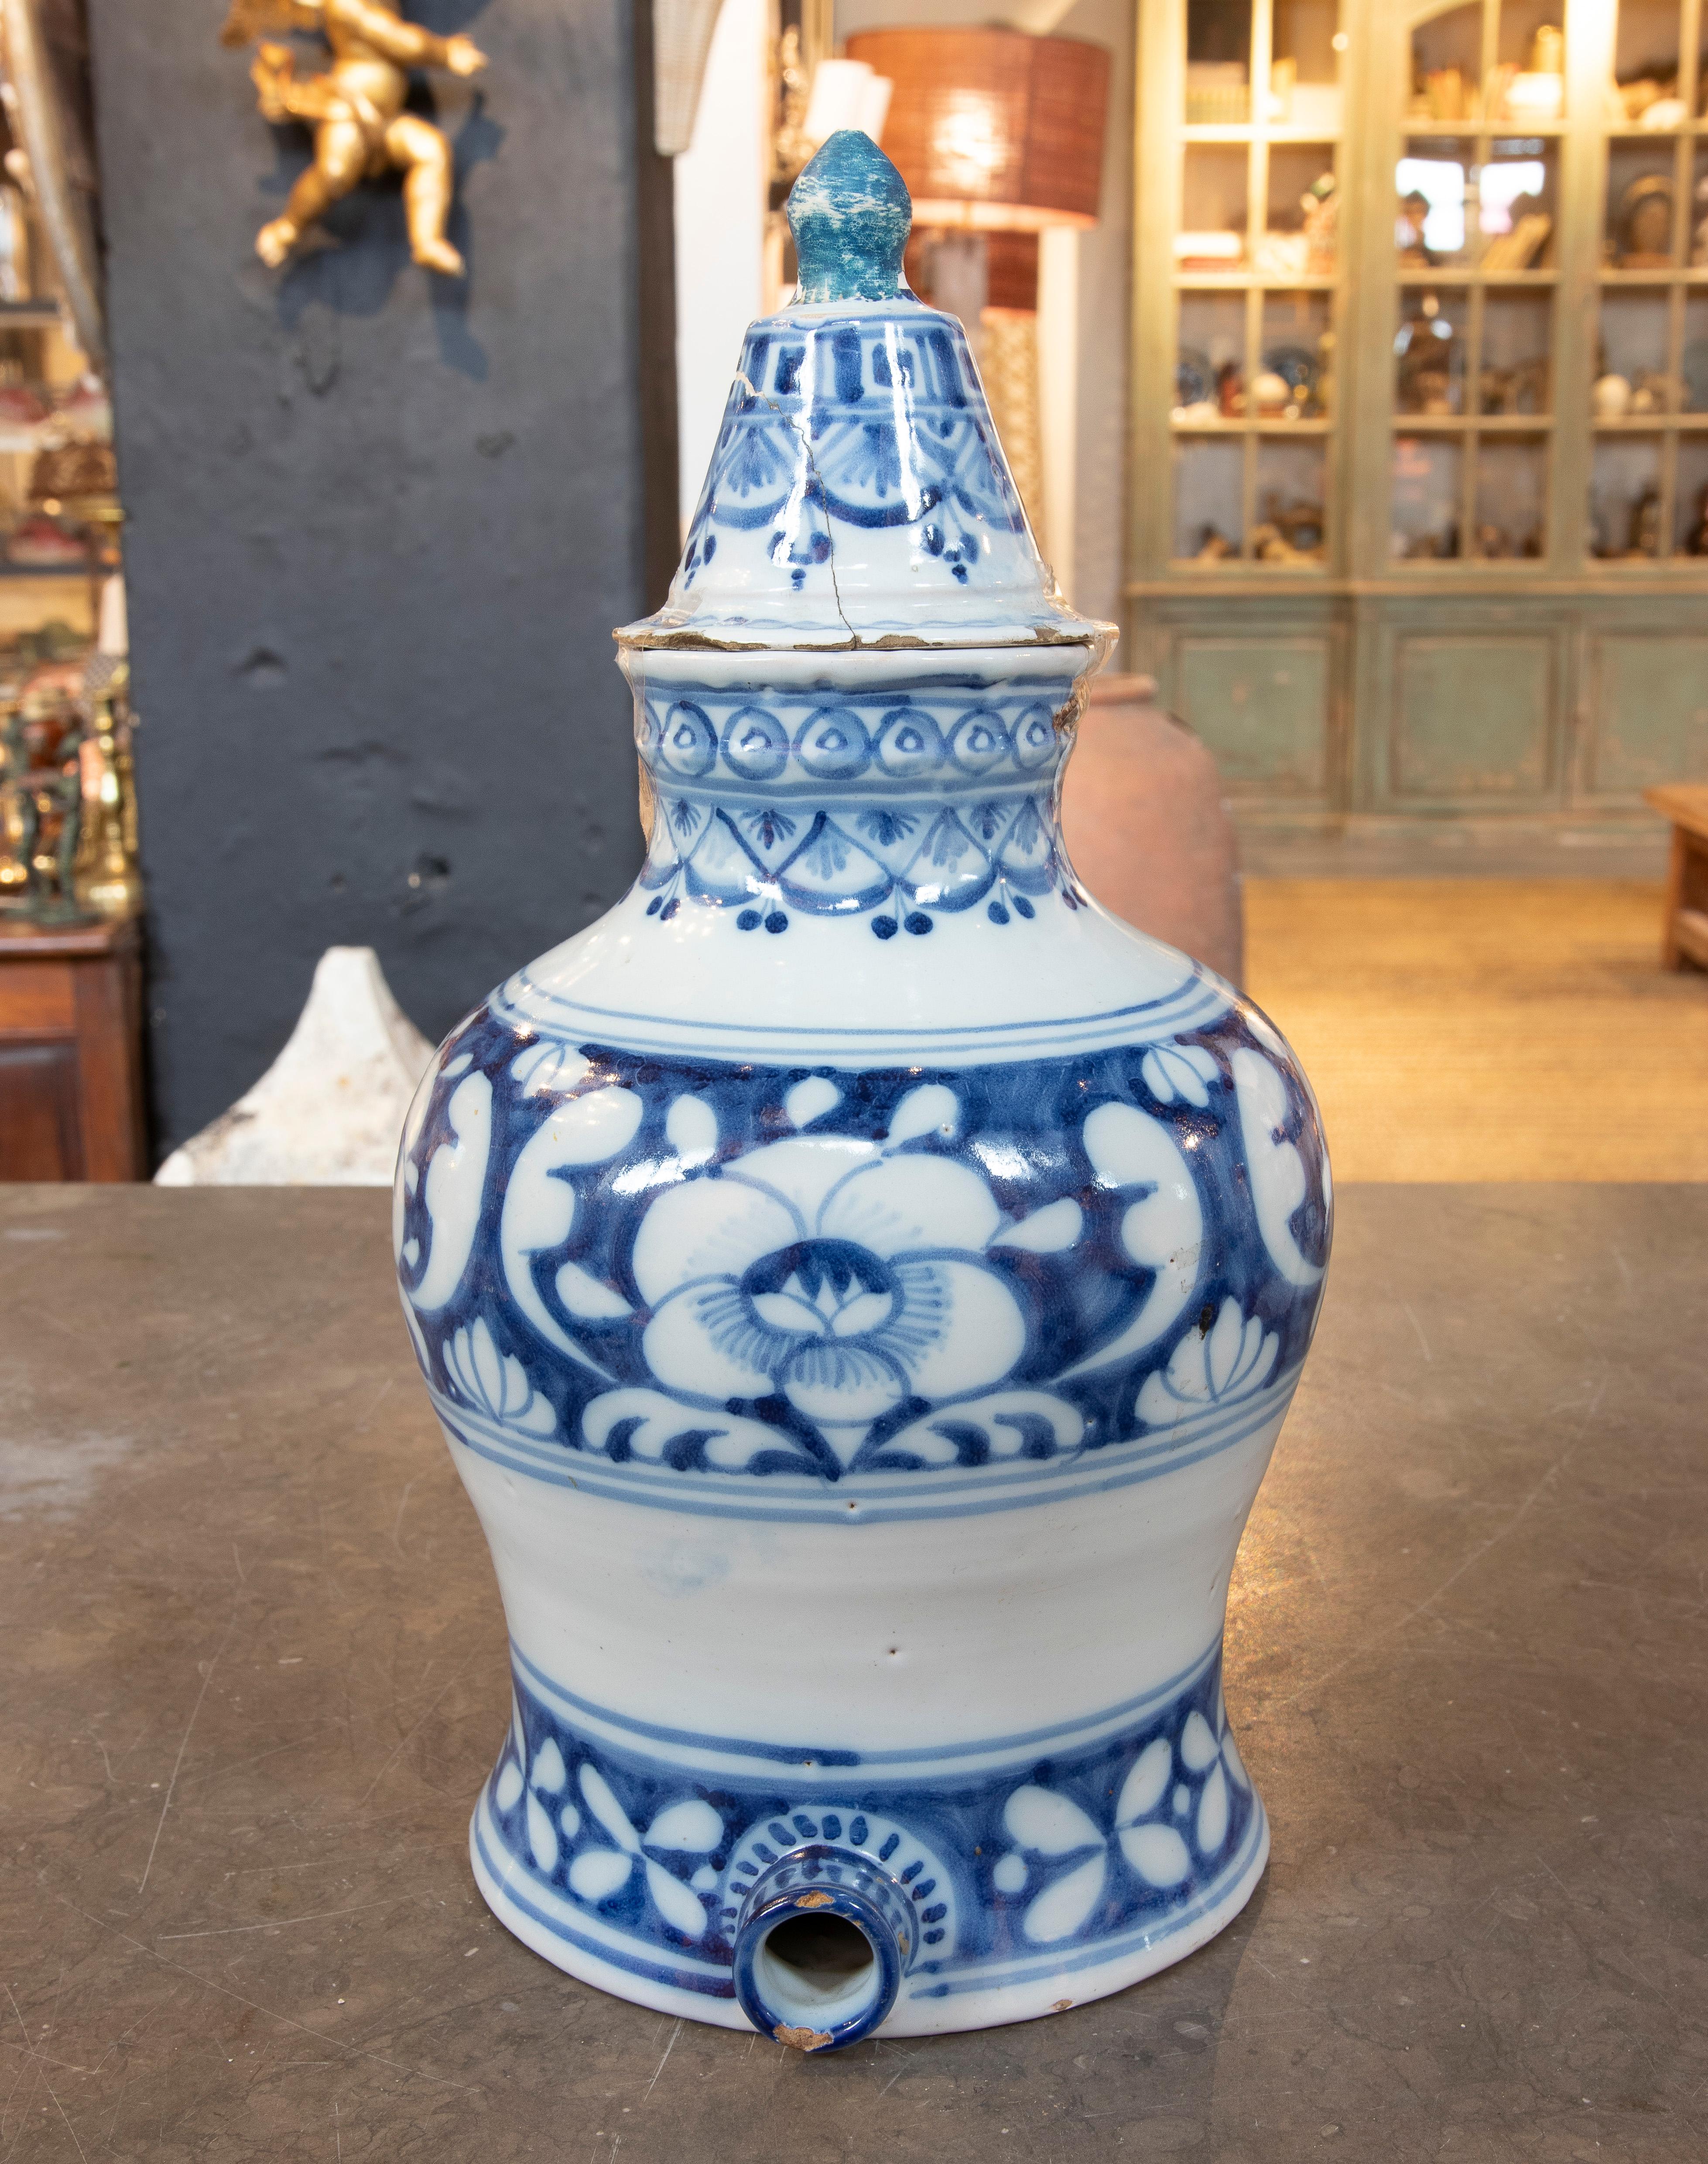 Spanische Keramik mit weiß glasiertem Keramikdeckel mit blauer Verzierung